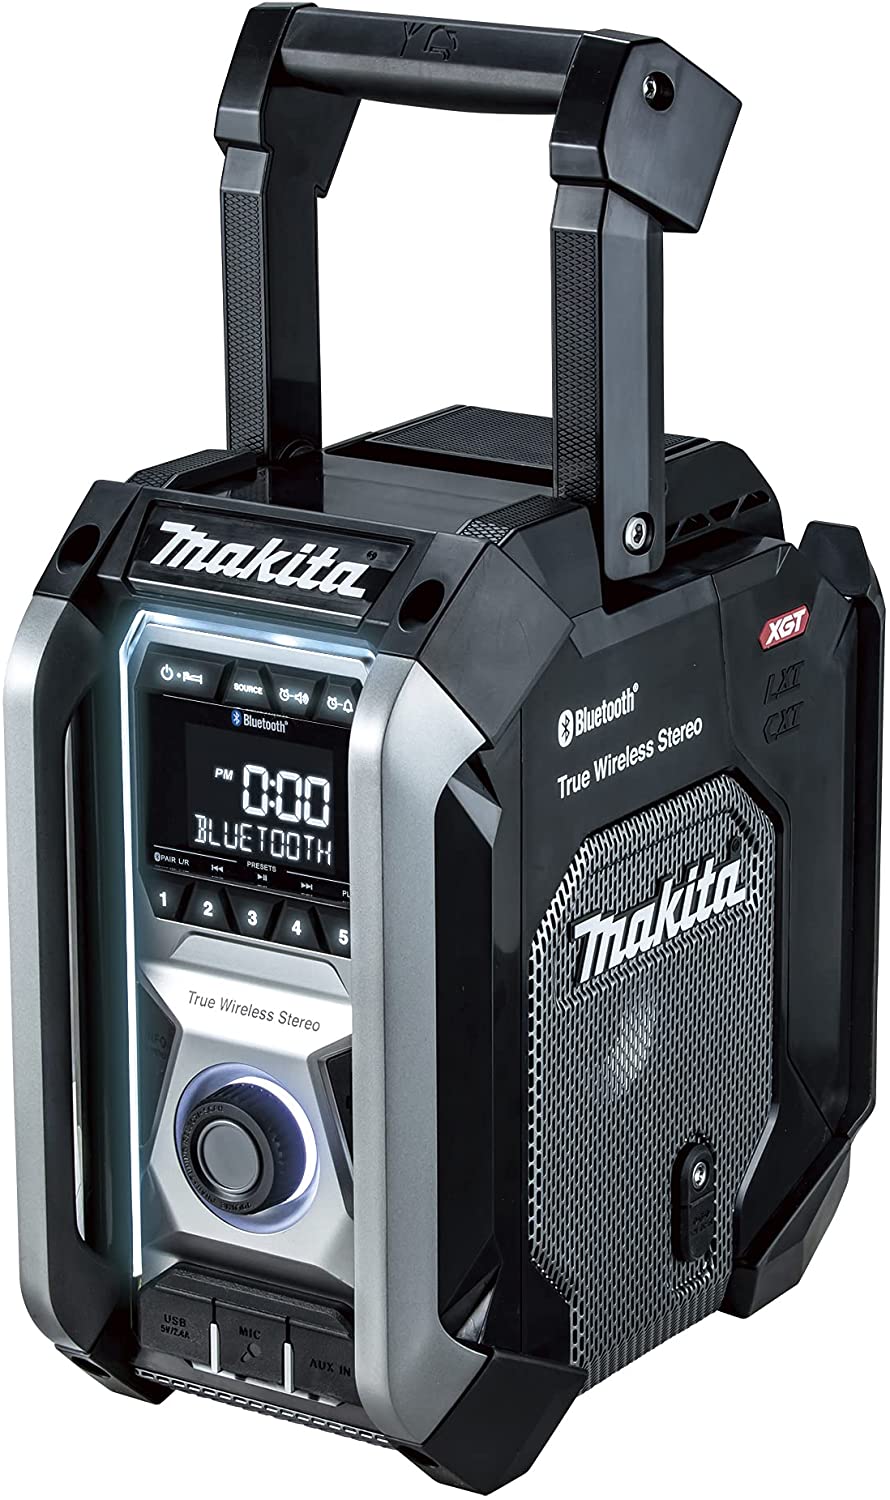 Makita radio - tools - by owner - sale - craigslist